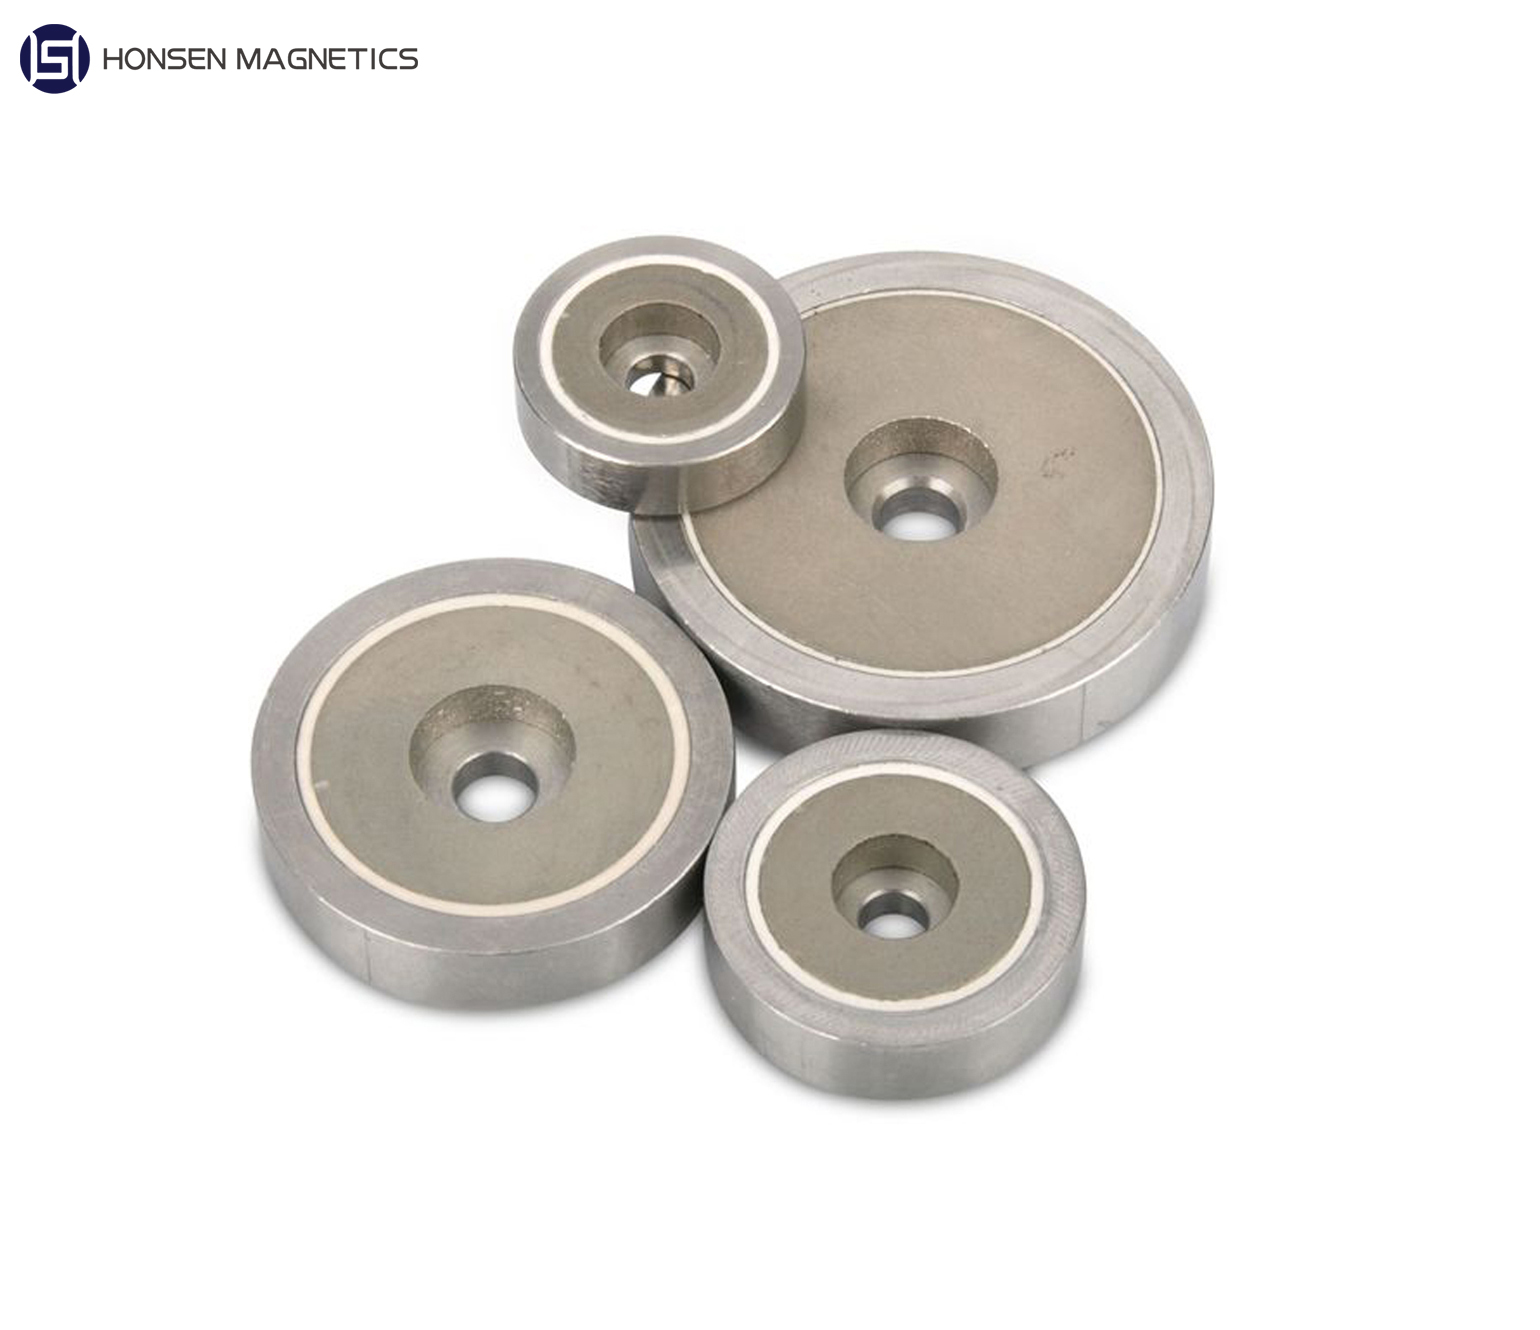 https://www.honsenmagnetics.com/smco-pot-magnets/